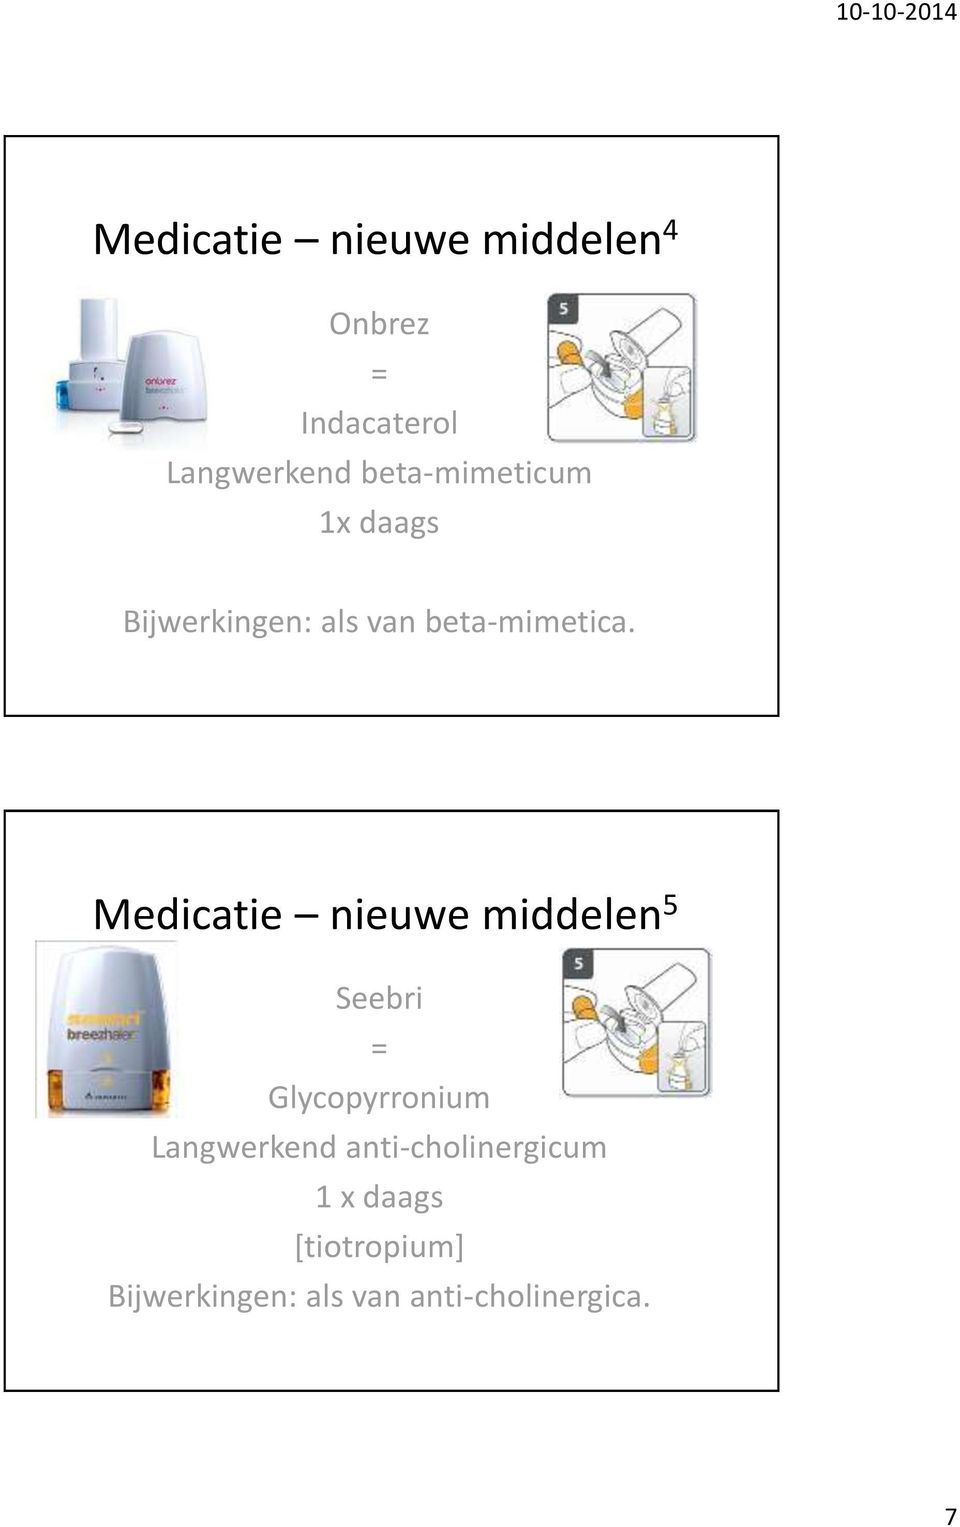 Medicatie nieuwe middelen 5 Seebri Glycopyrronium Langwerkend